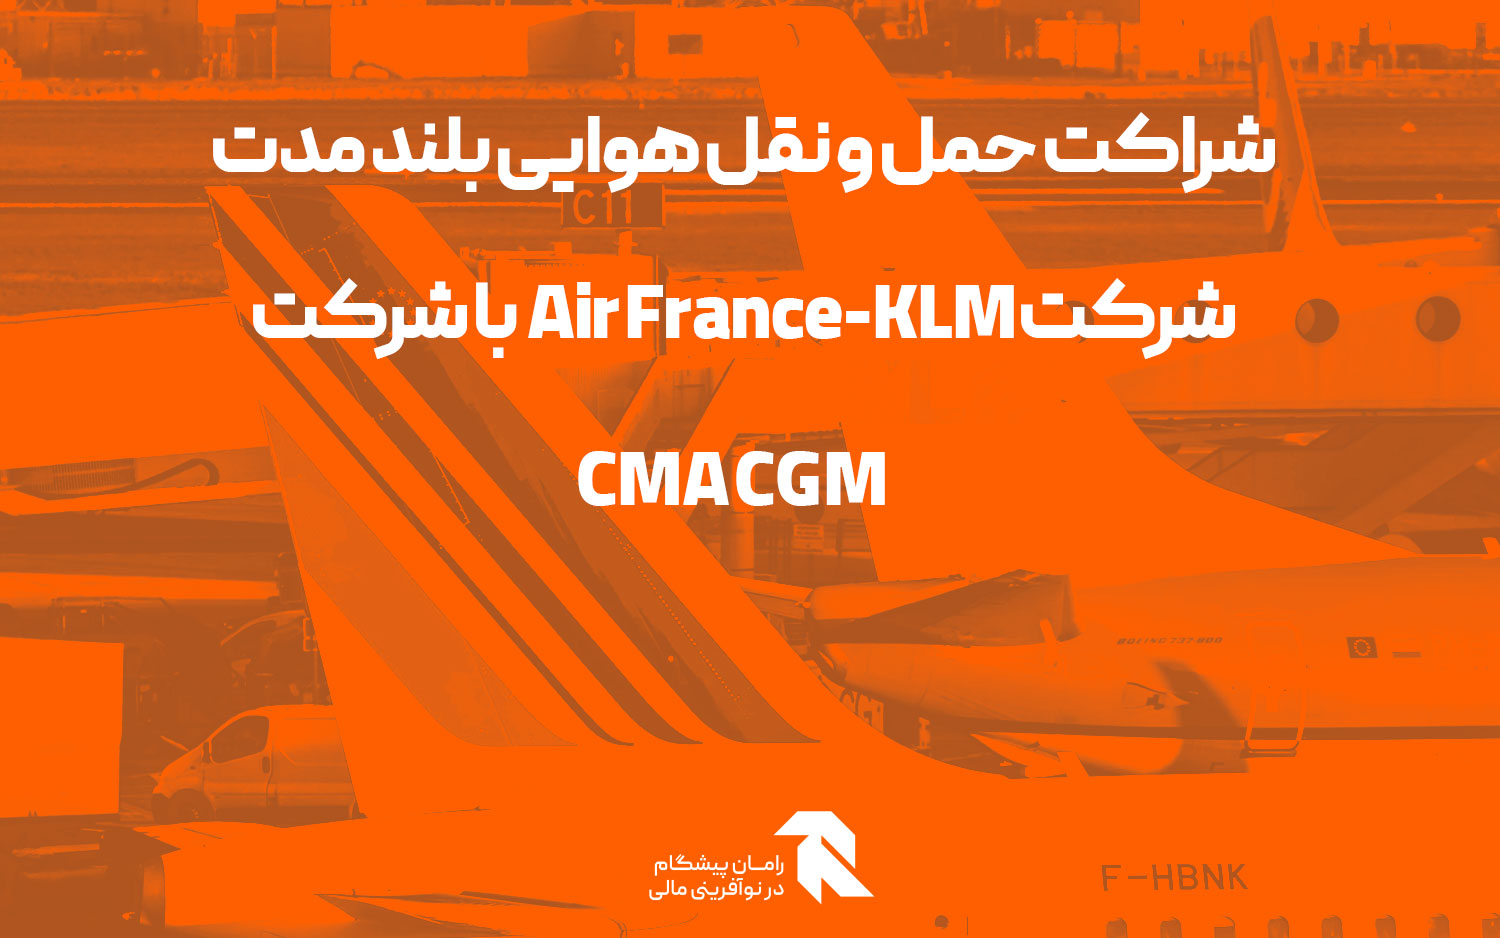 شراکت حمل و نقل هوایی بلند مدت شرکت Air France-KLM با شرکت CMA CGM